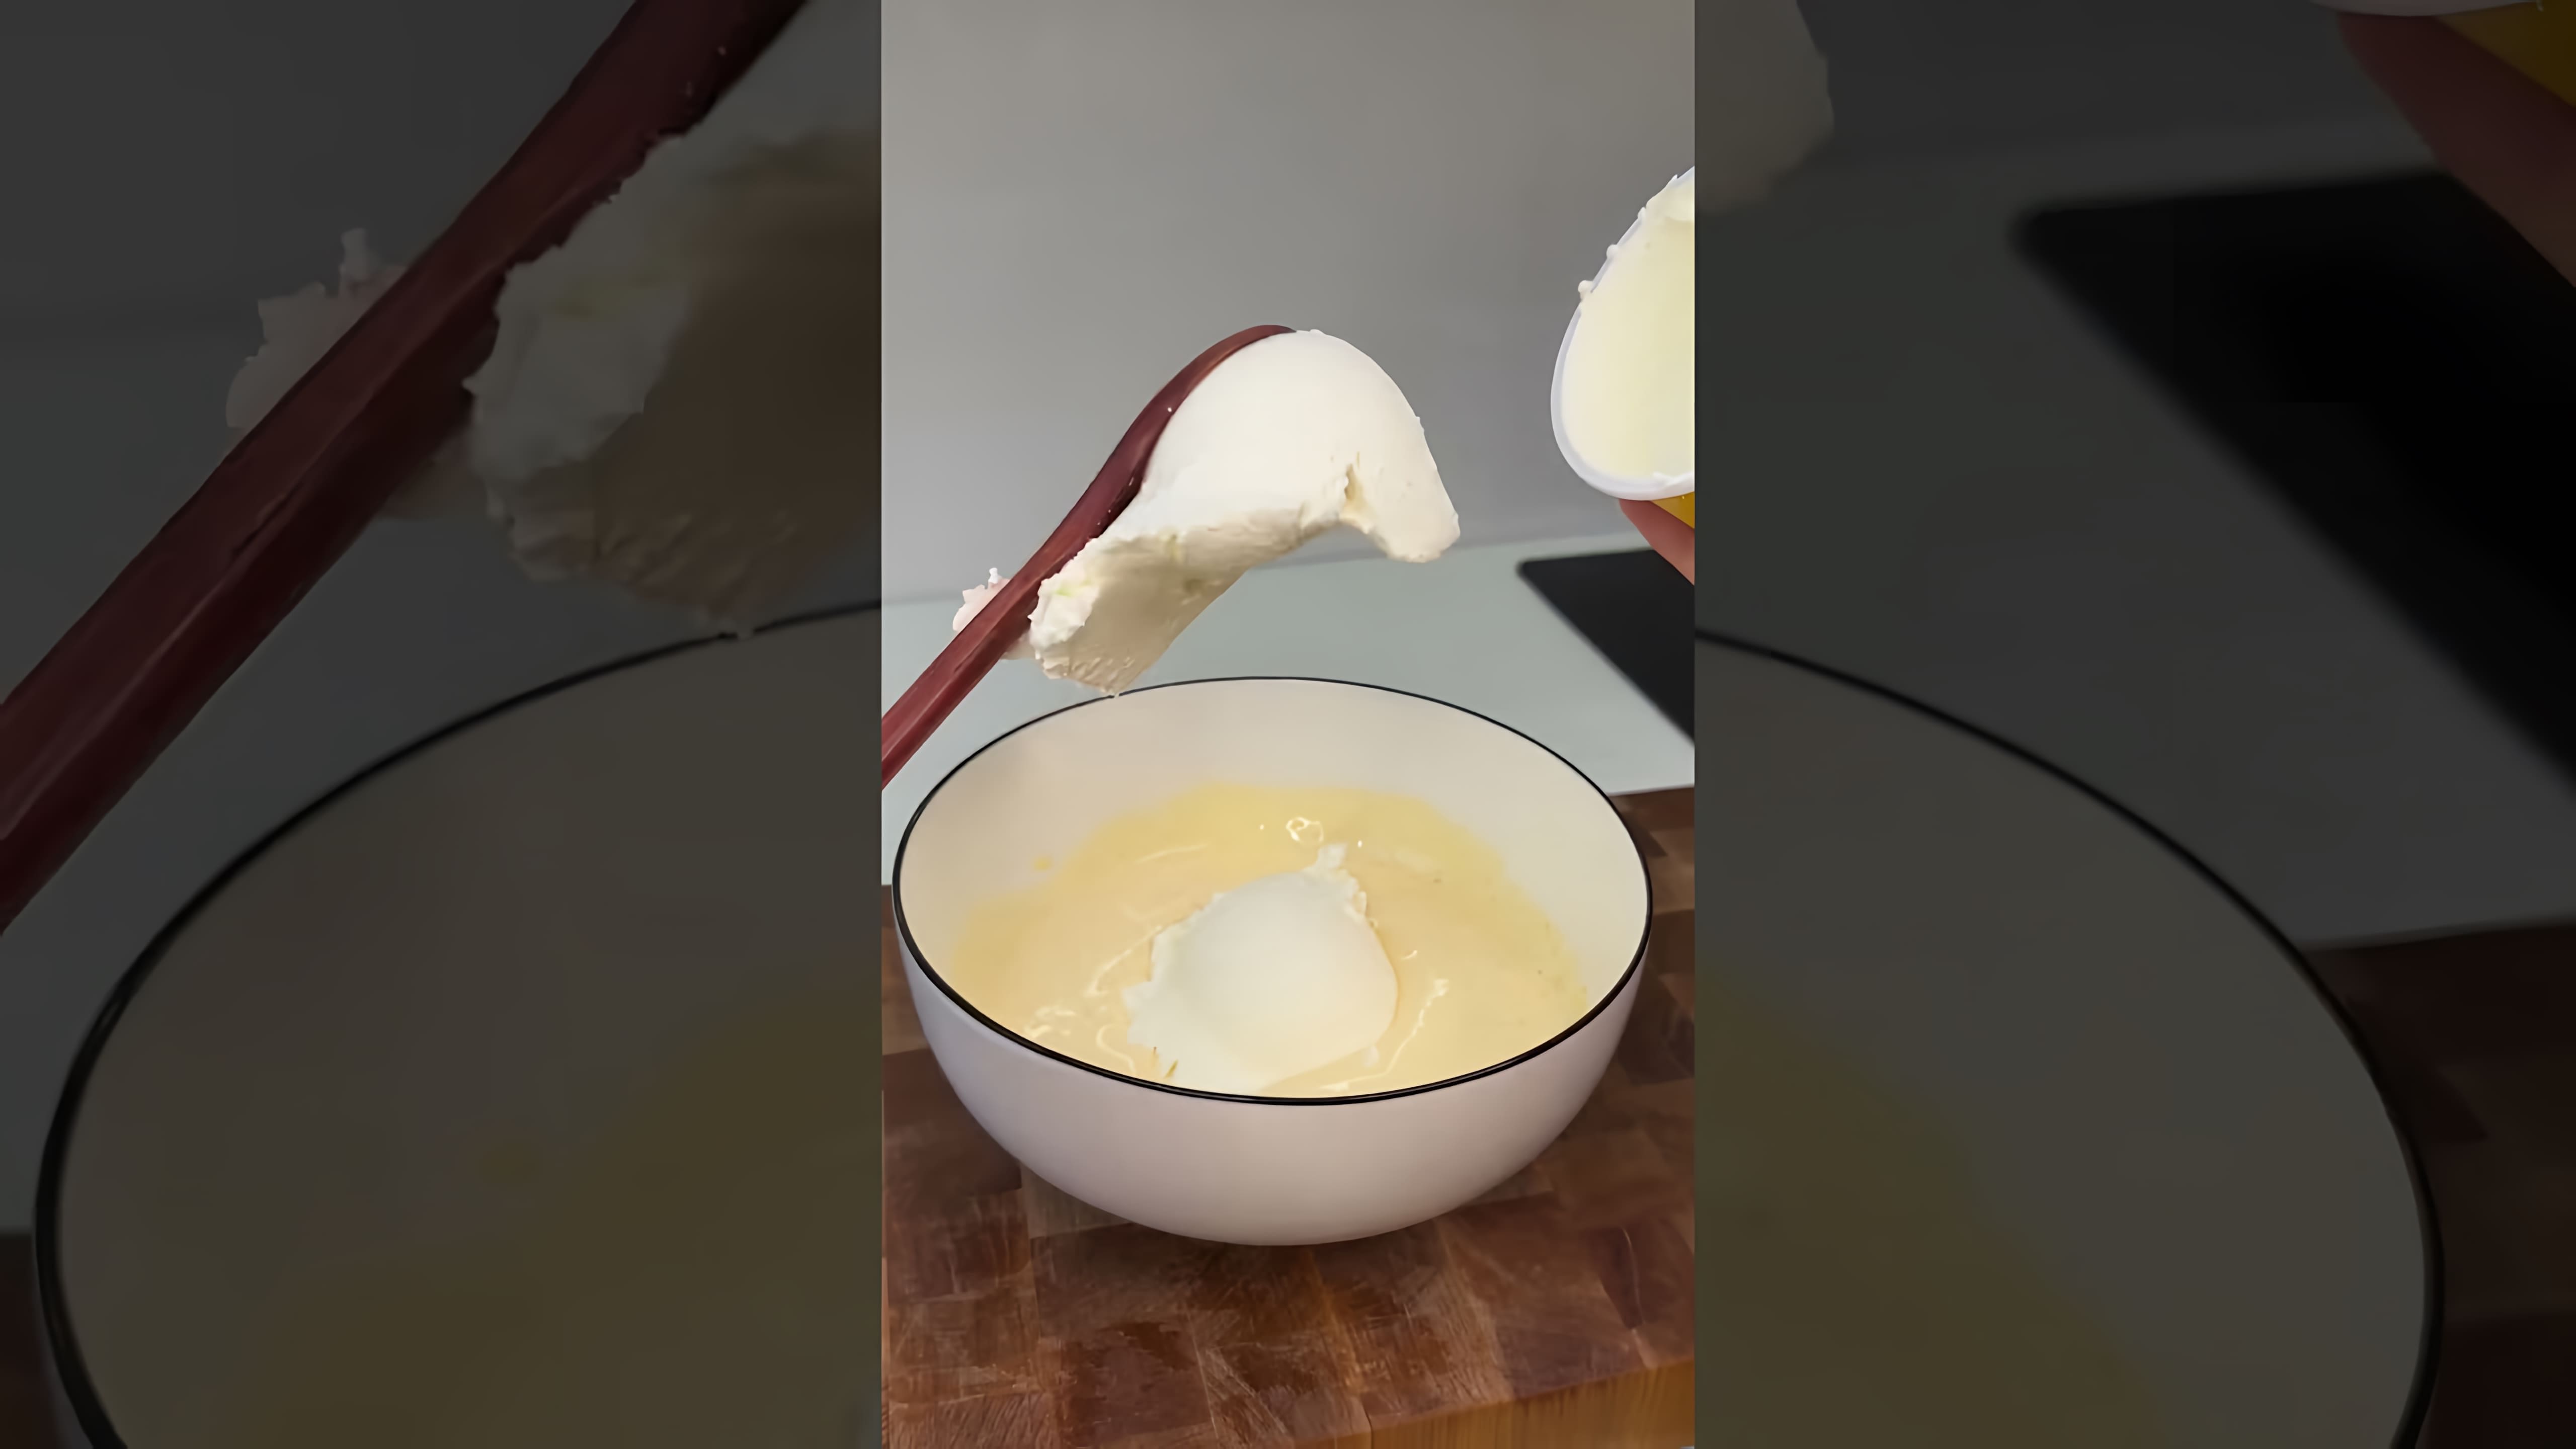 В этом видео мы видим, как готовится популярный итальянский десерт - тирамису